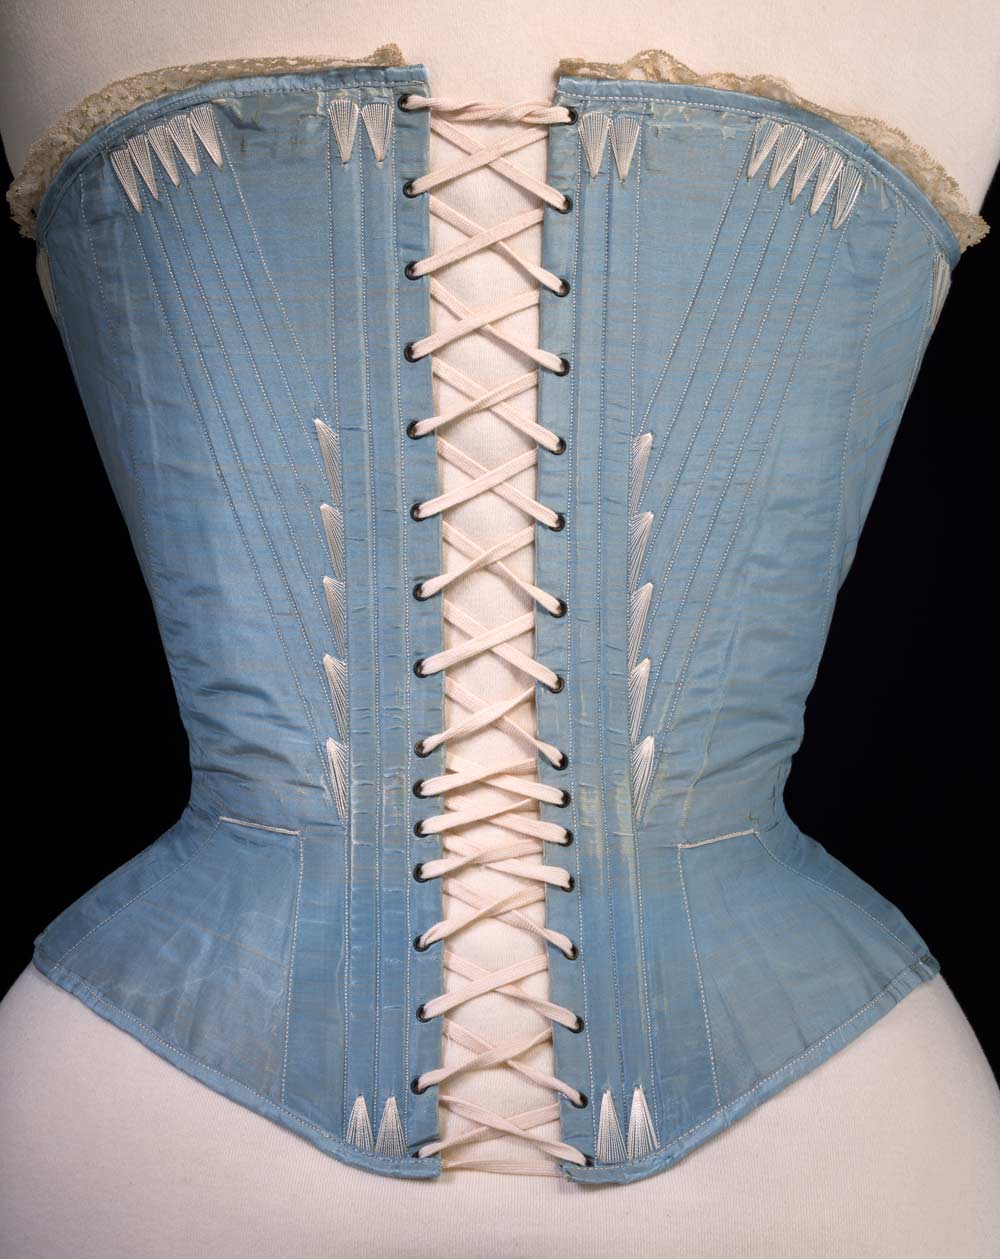 corset 1860